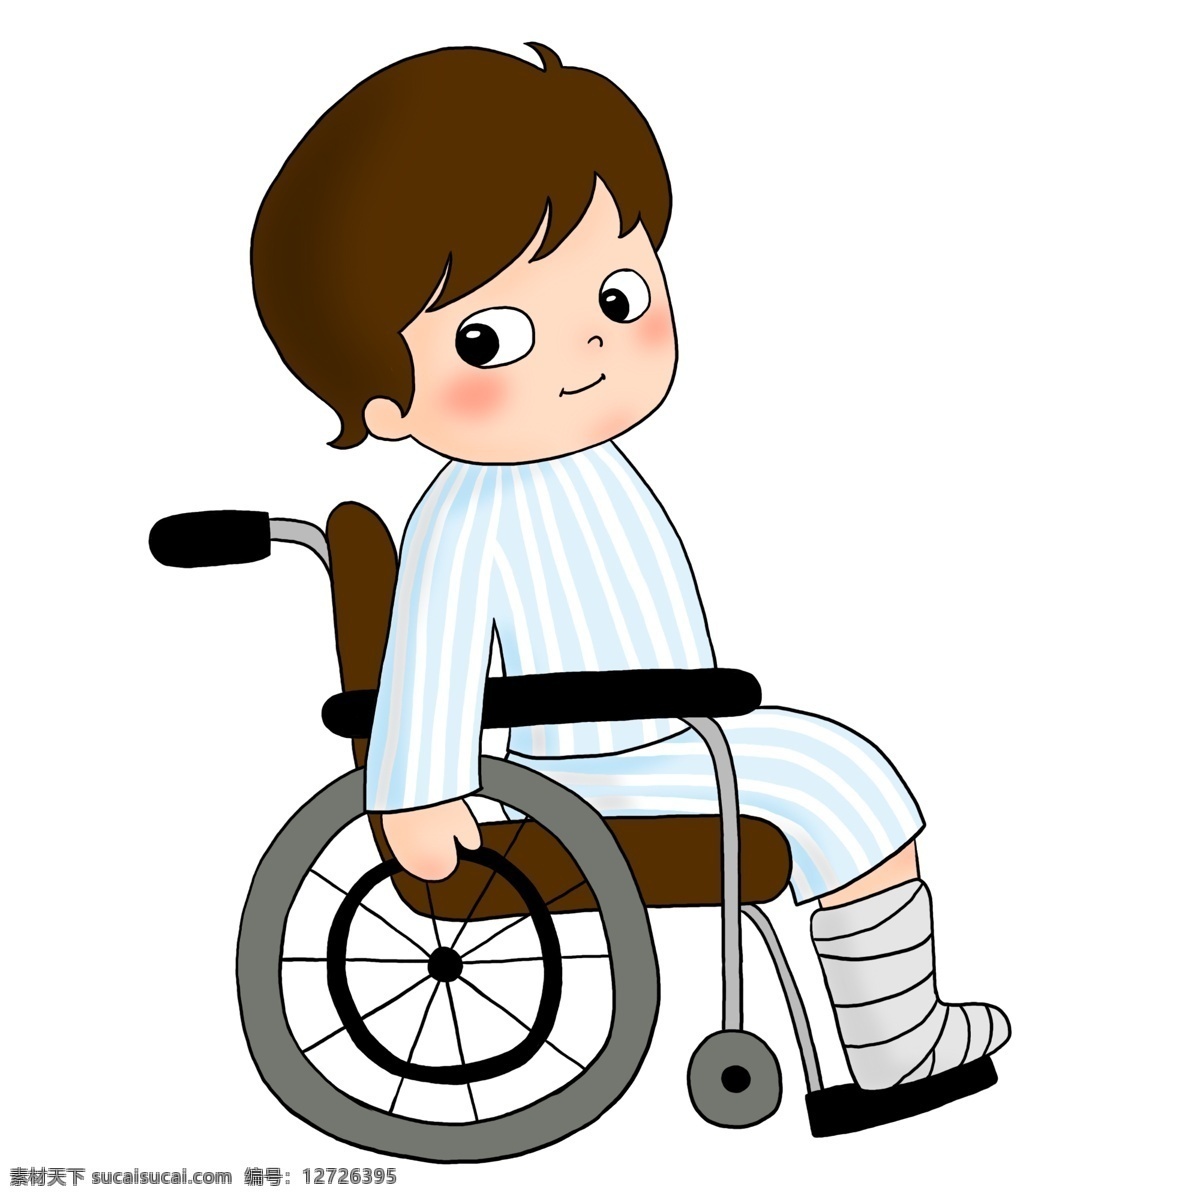 可爱 卡通 坐 轮椅 上 小 男孩 医疗 病人